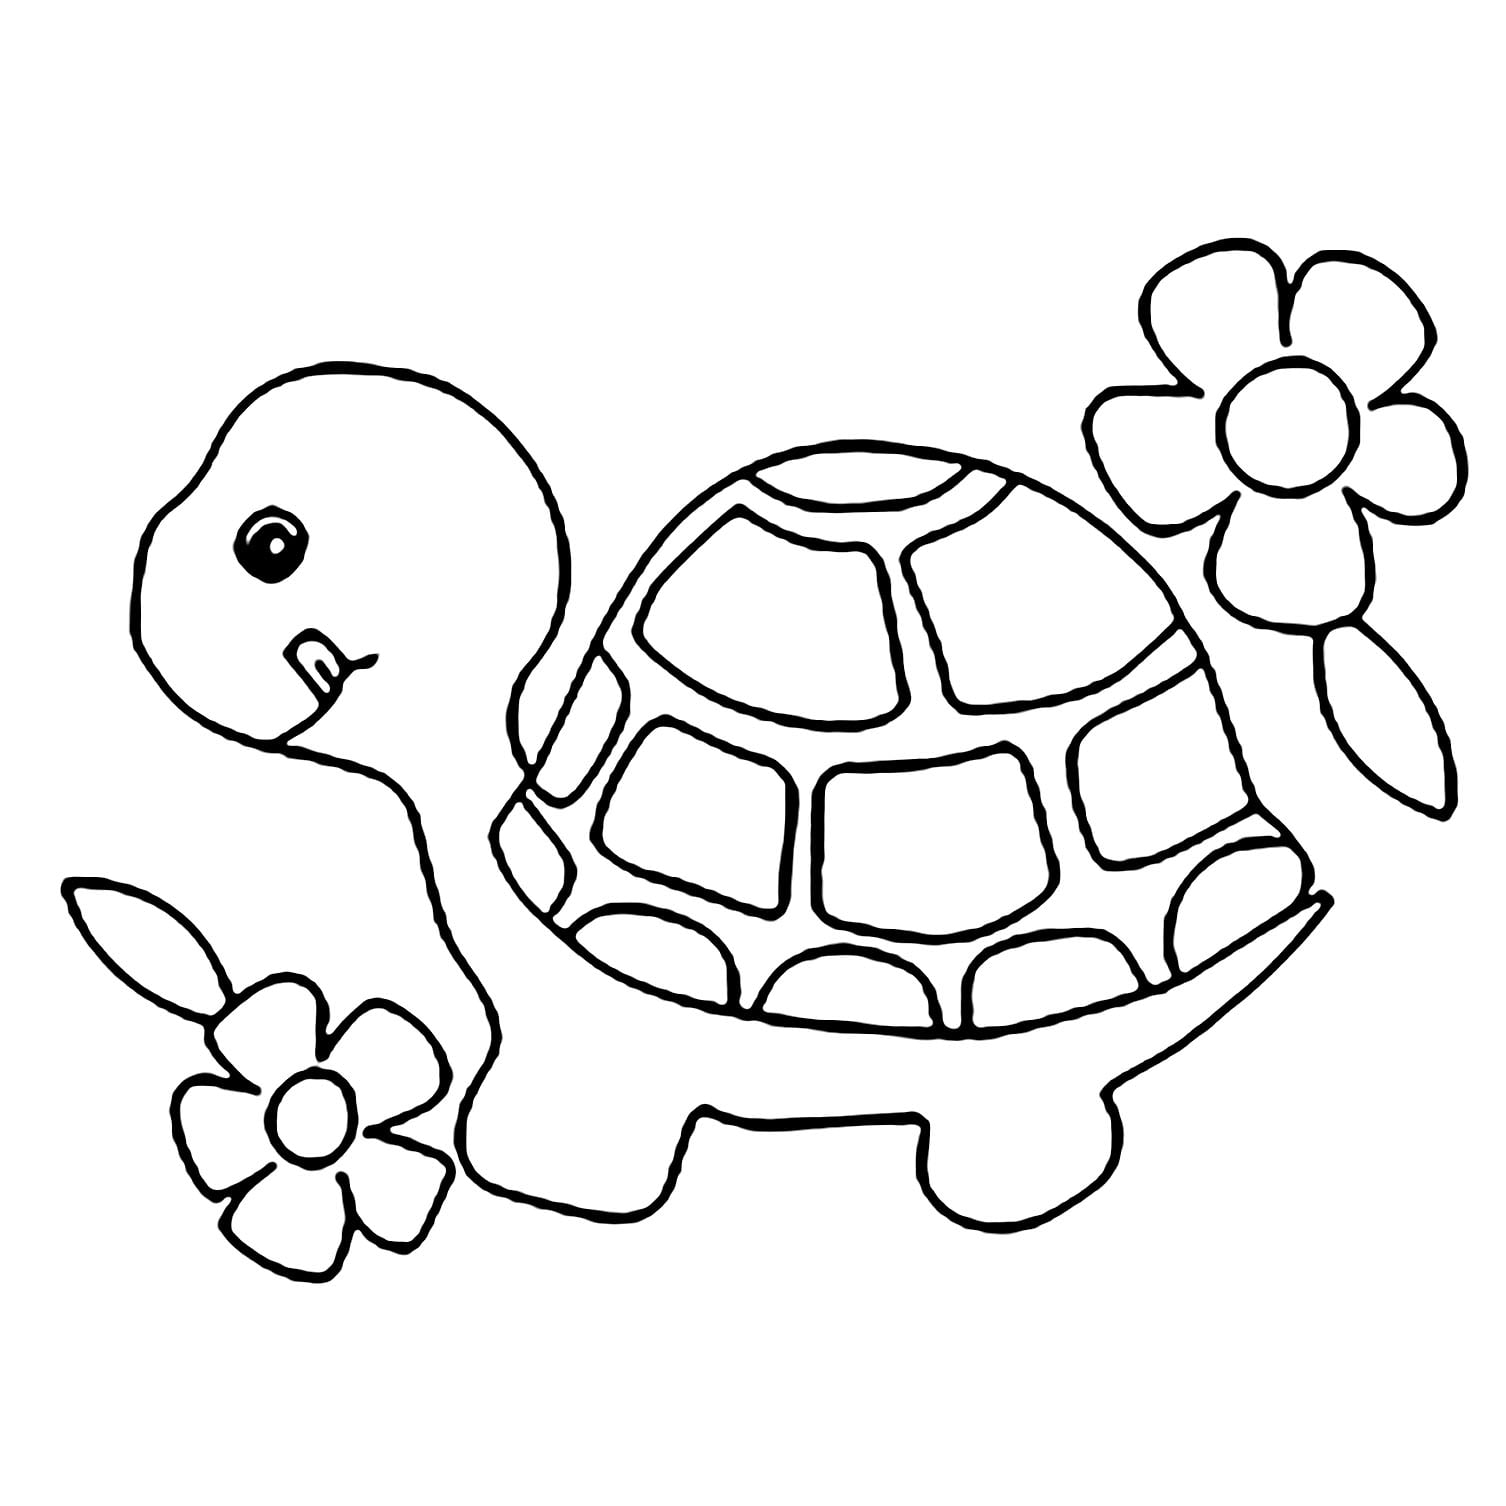 Tranh tô màu con rùa 1  Turtle coloring pages Easy coloring pages Turtle  drawing